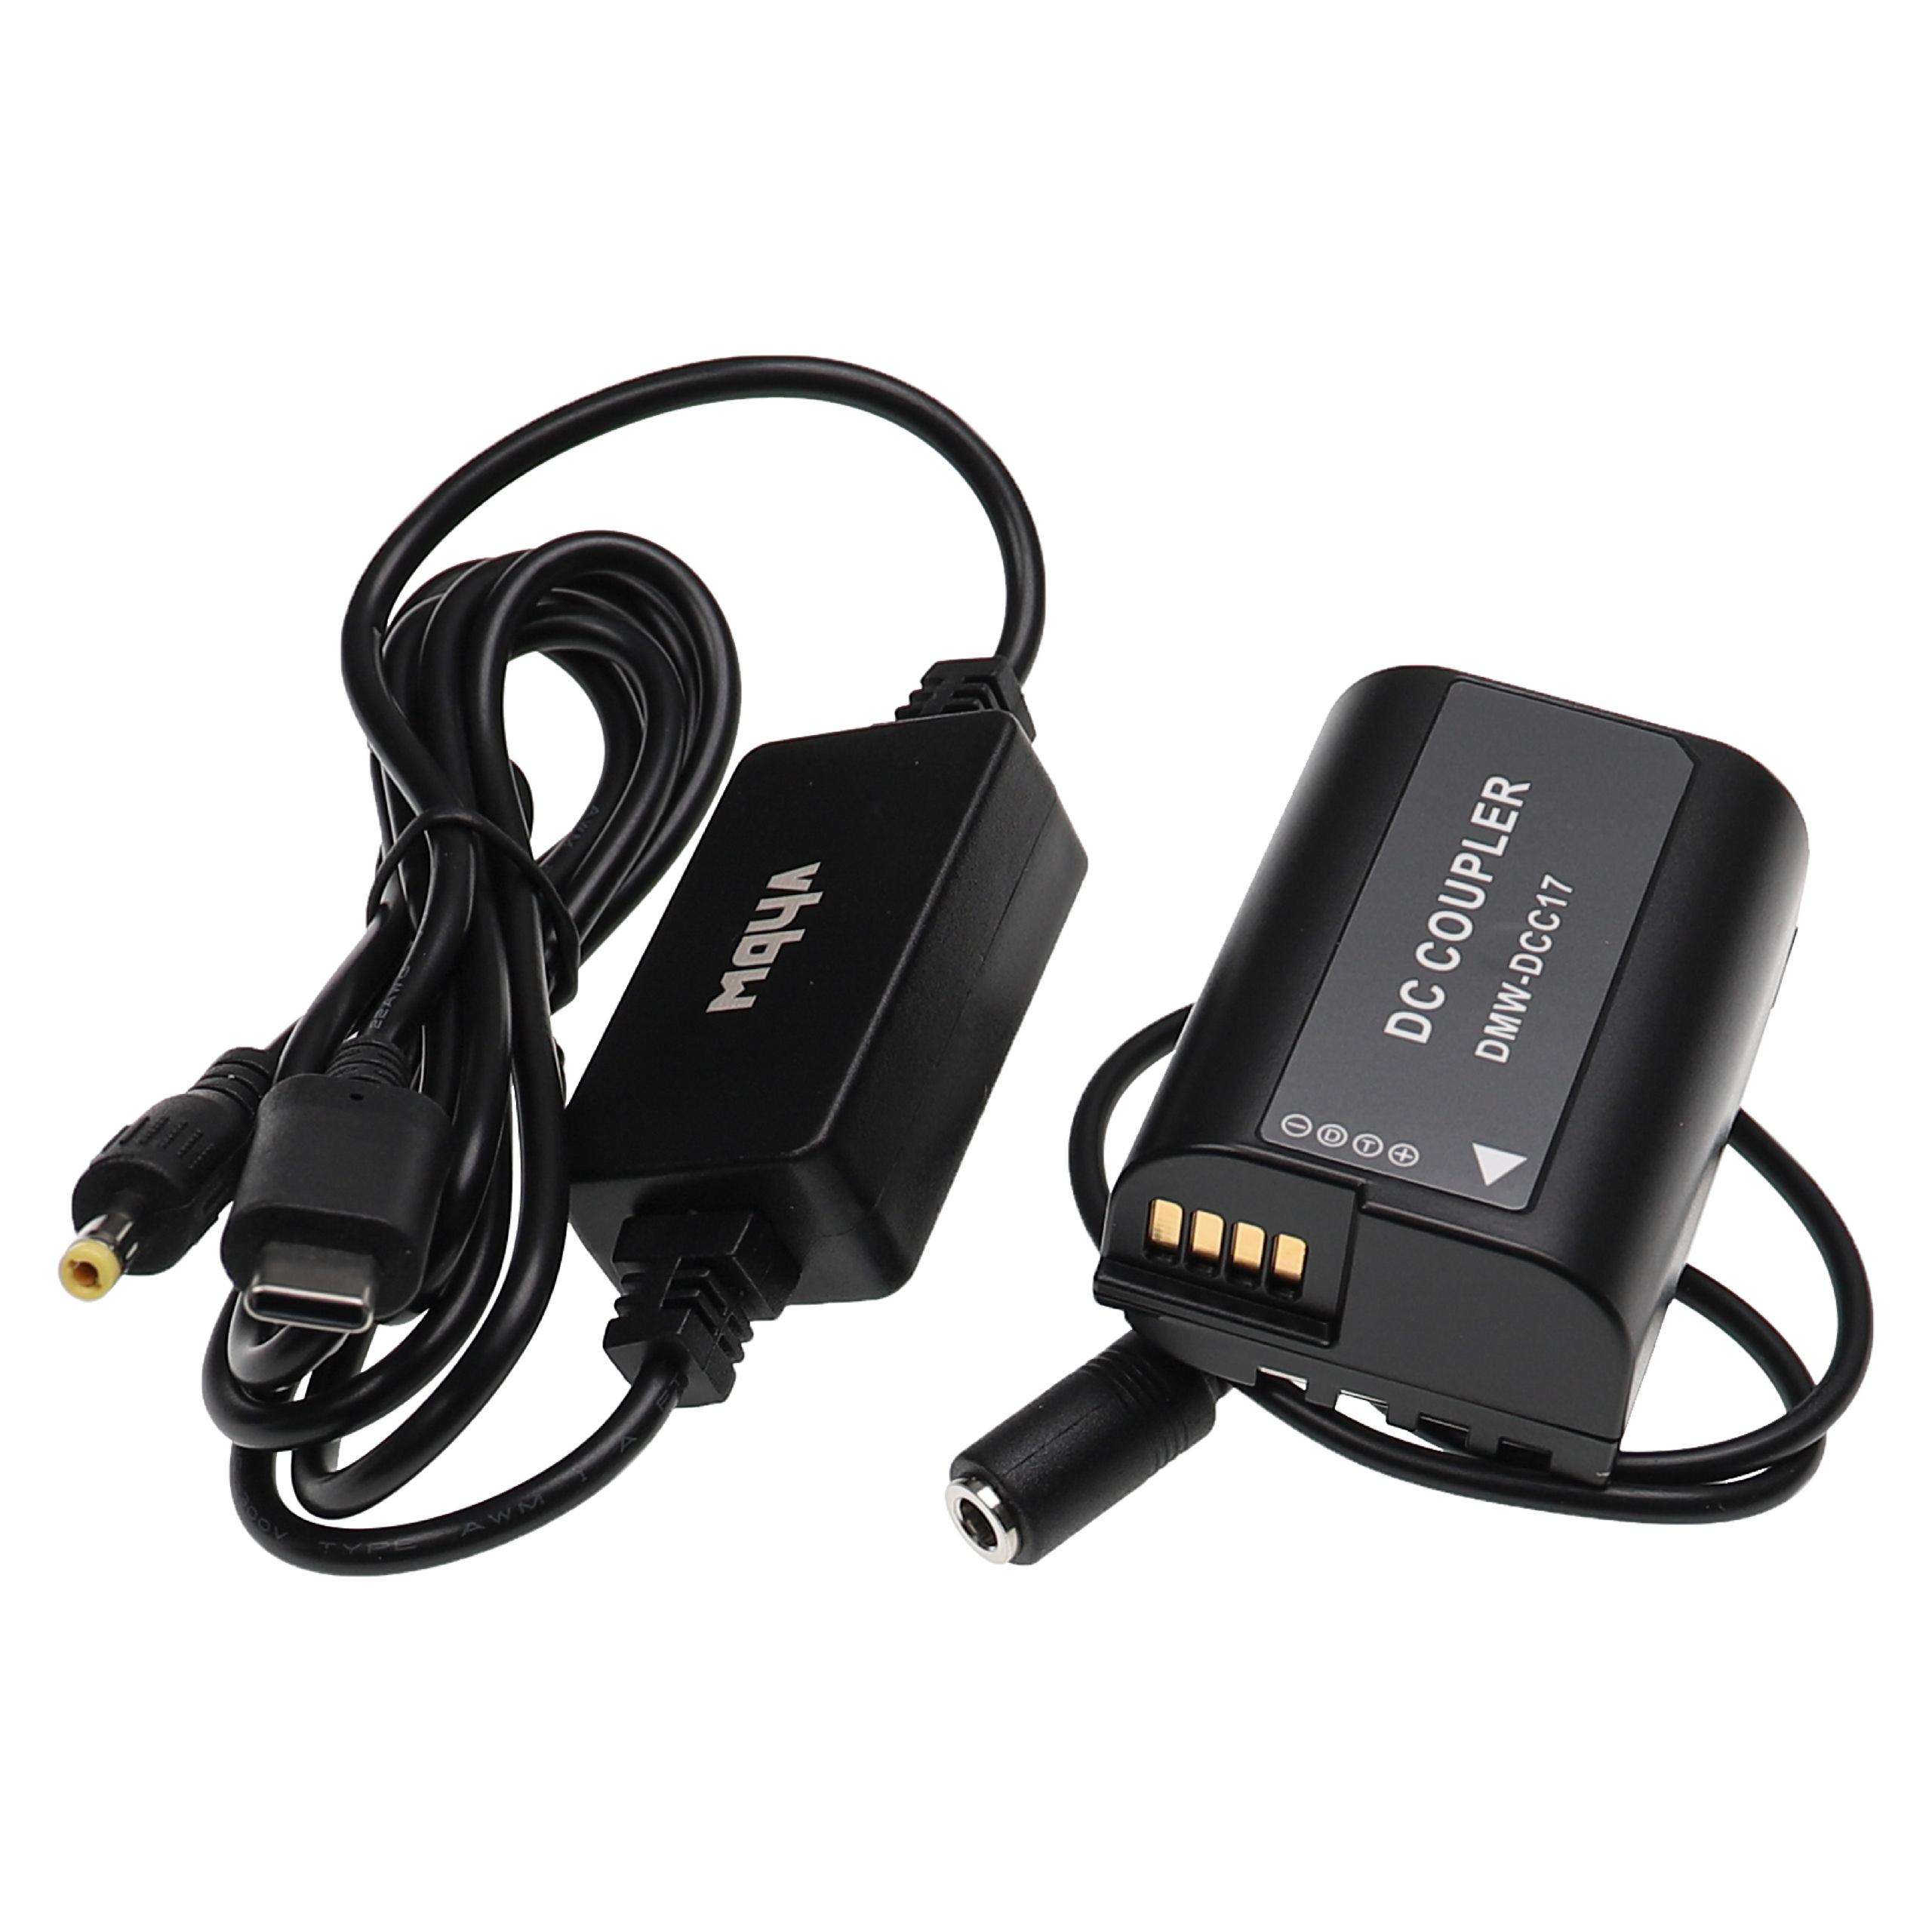 USB Netzteil als Ersatz für Panasonic DMW-AC8 für Kamera + DC Kuppler ersetzt Panasonic DMW-DCC17